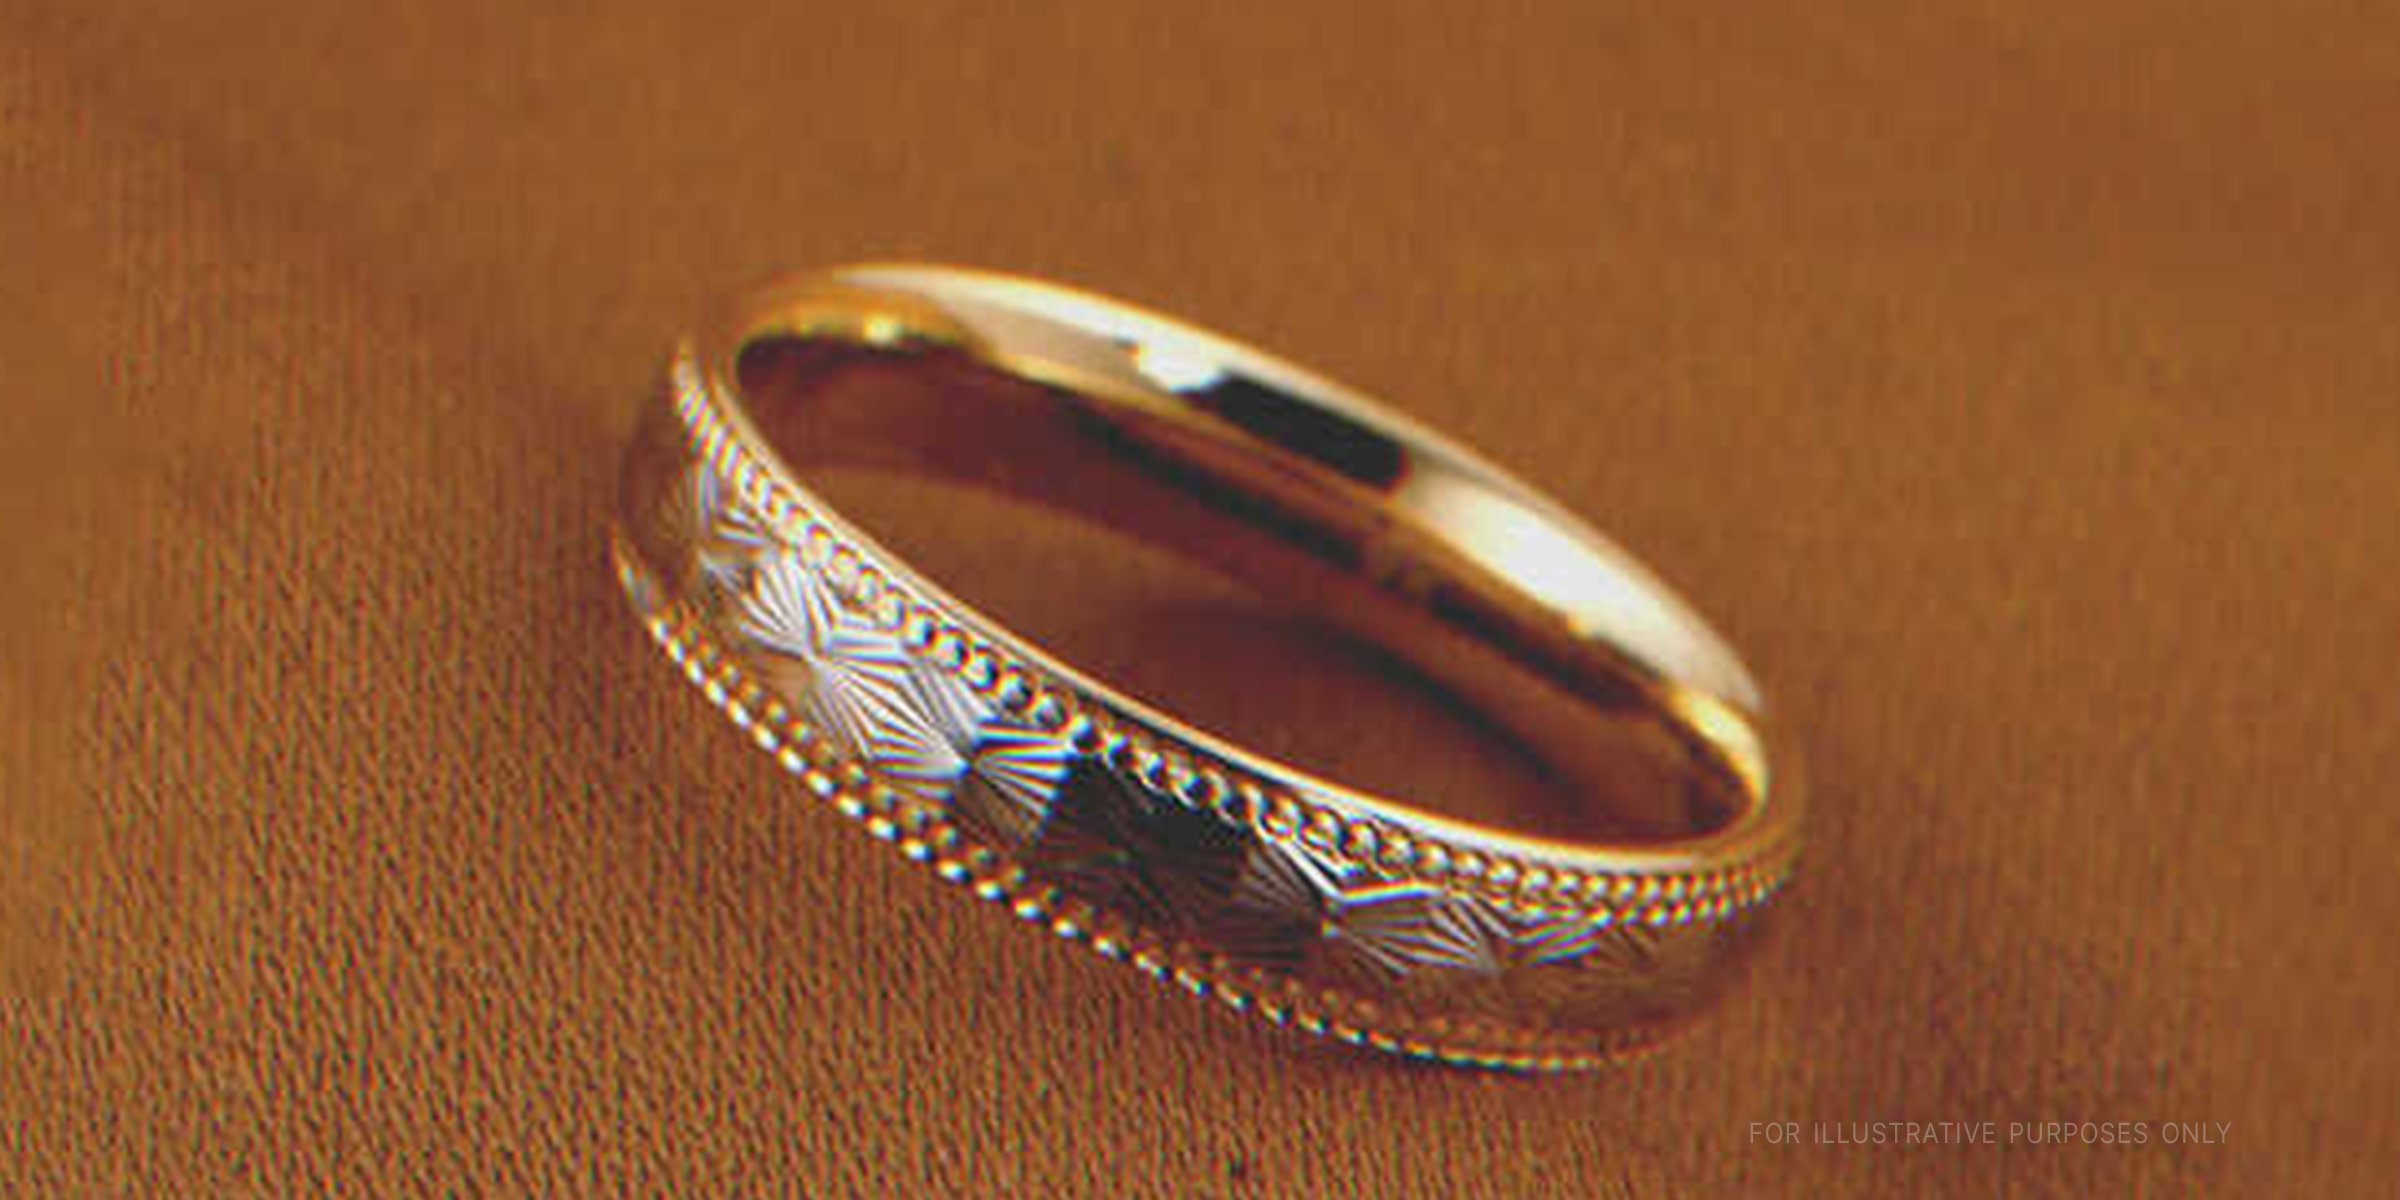 An antique wedding ring | Source: Shutterstock